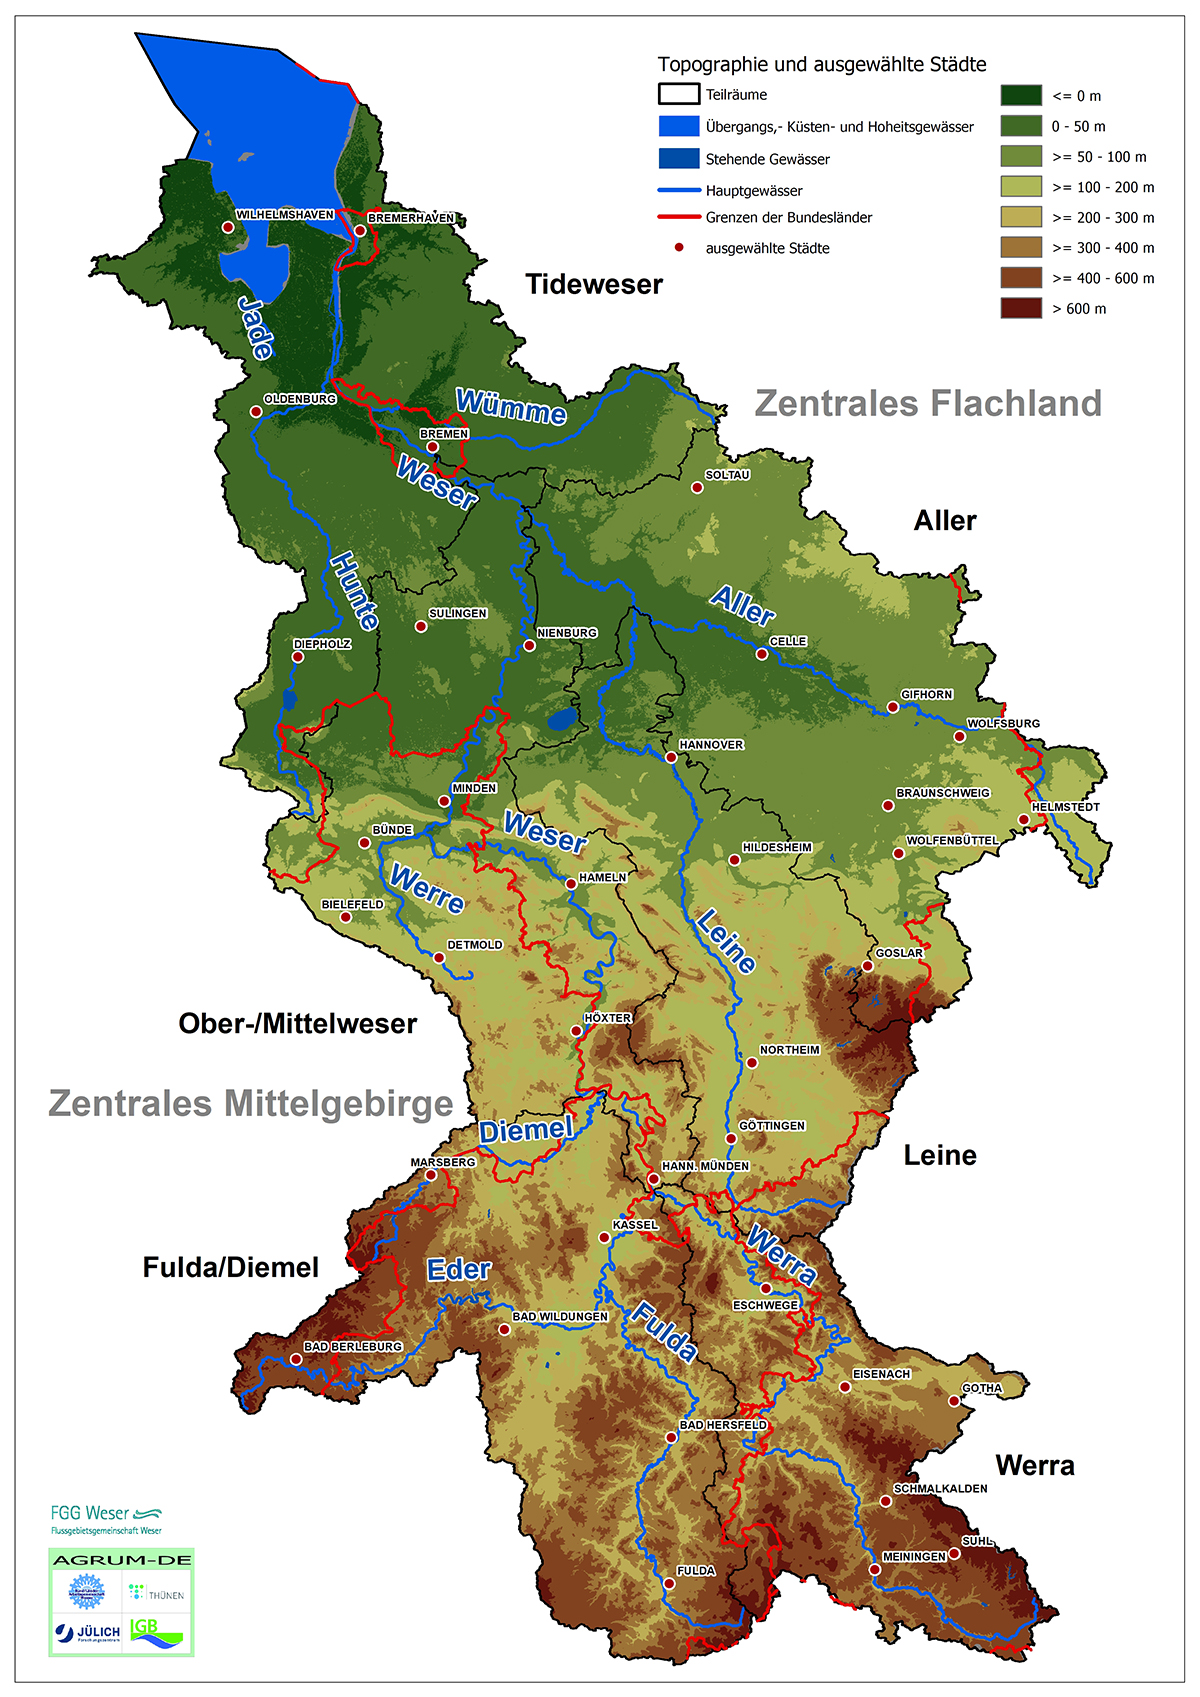 Topographie in der Flussgebietseinheit Weser (FGG Weser, 2021)